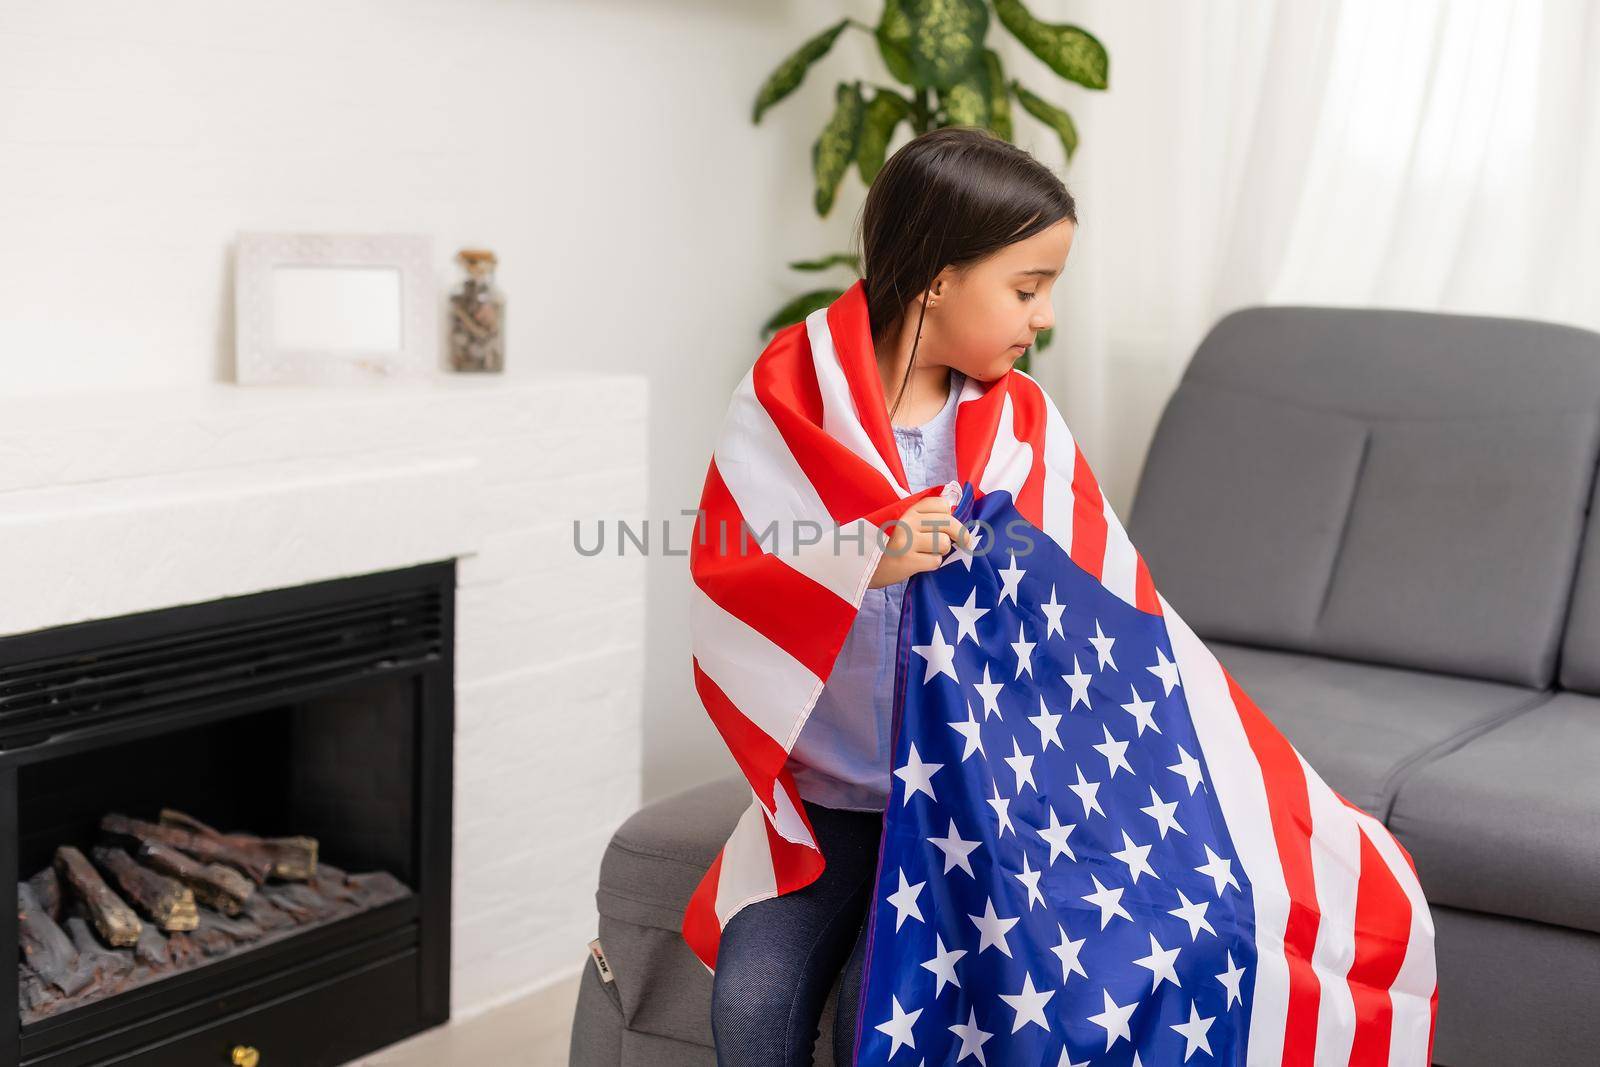 images of lovely little girl over USA flag background.